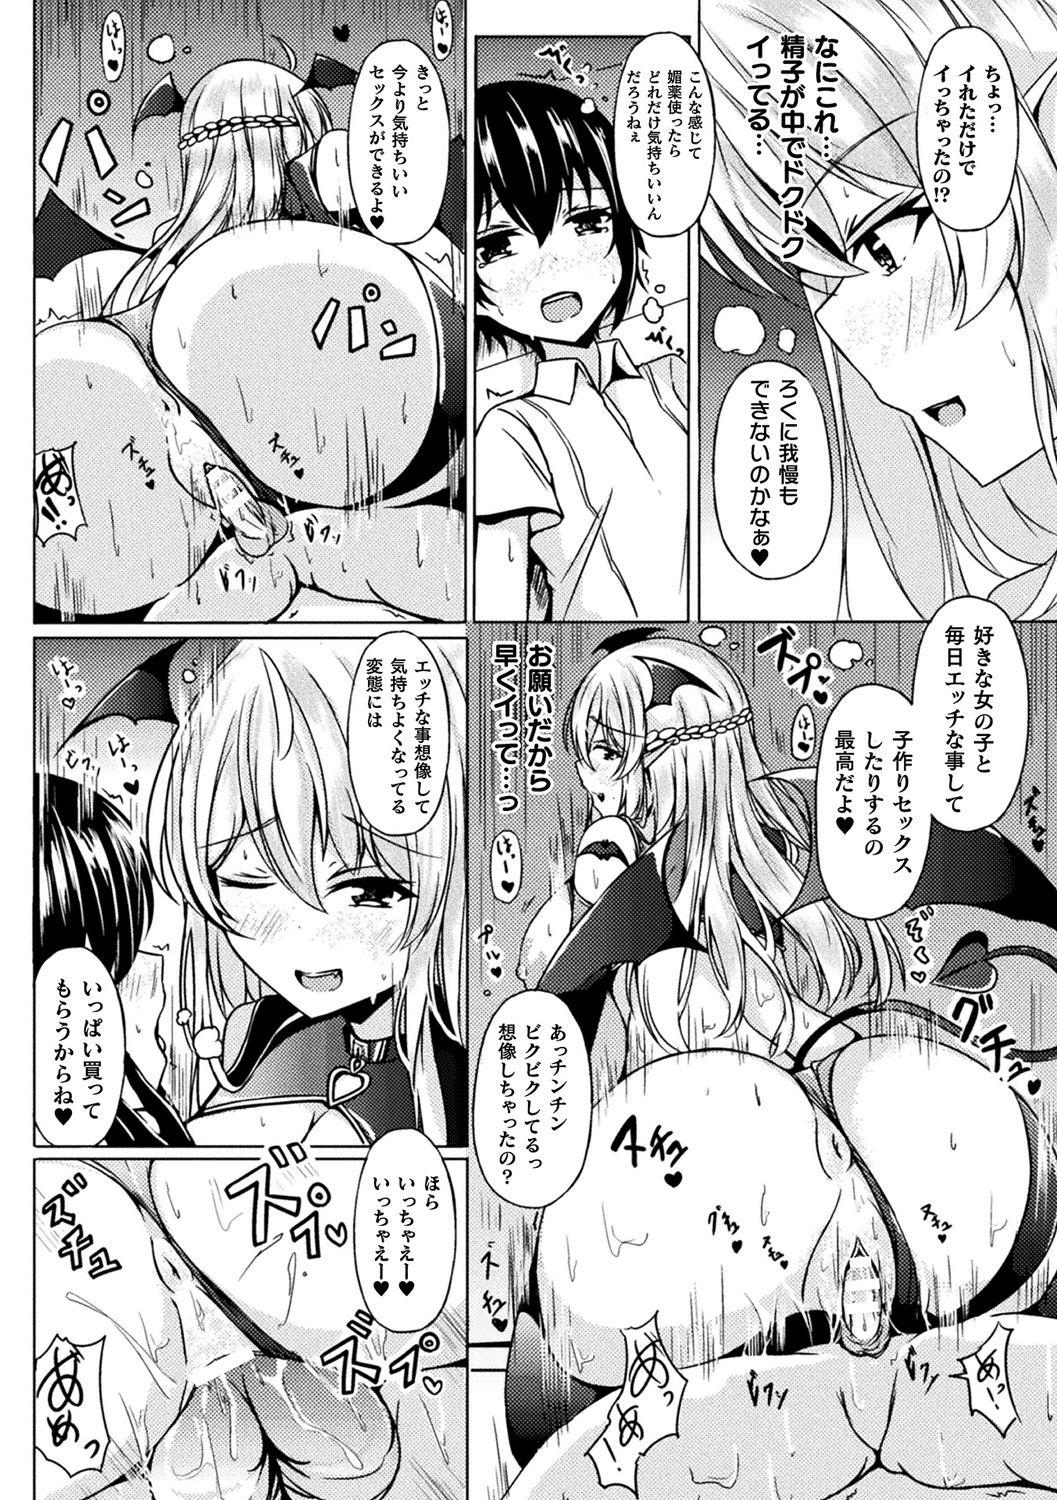 [Anthology] Bessatsu Comic Unreal Ponkotsu Fantasy Heroine H ~Doji o Funde Gyakuten Saretari Ero Trap ni Hamattari!?~ Vol. 2 [Digital] 31